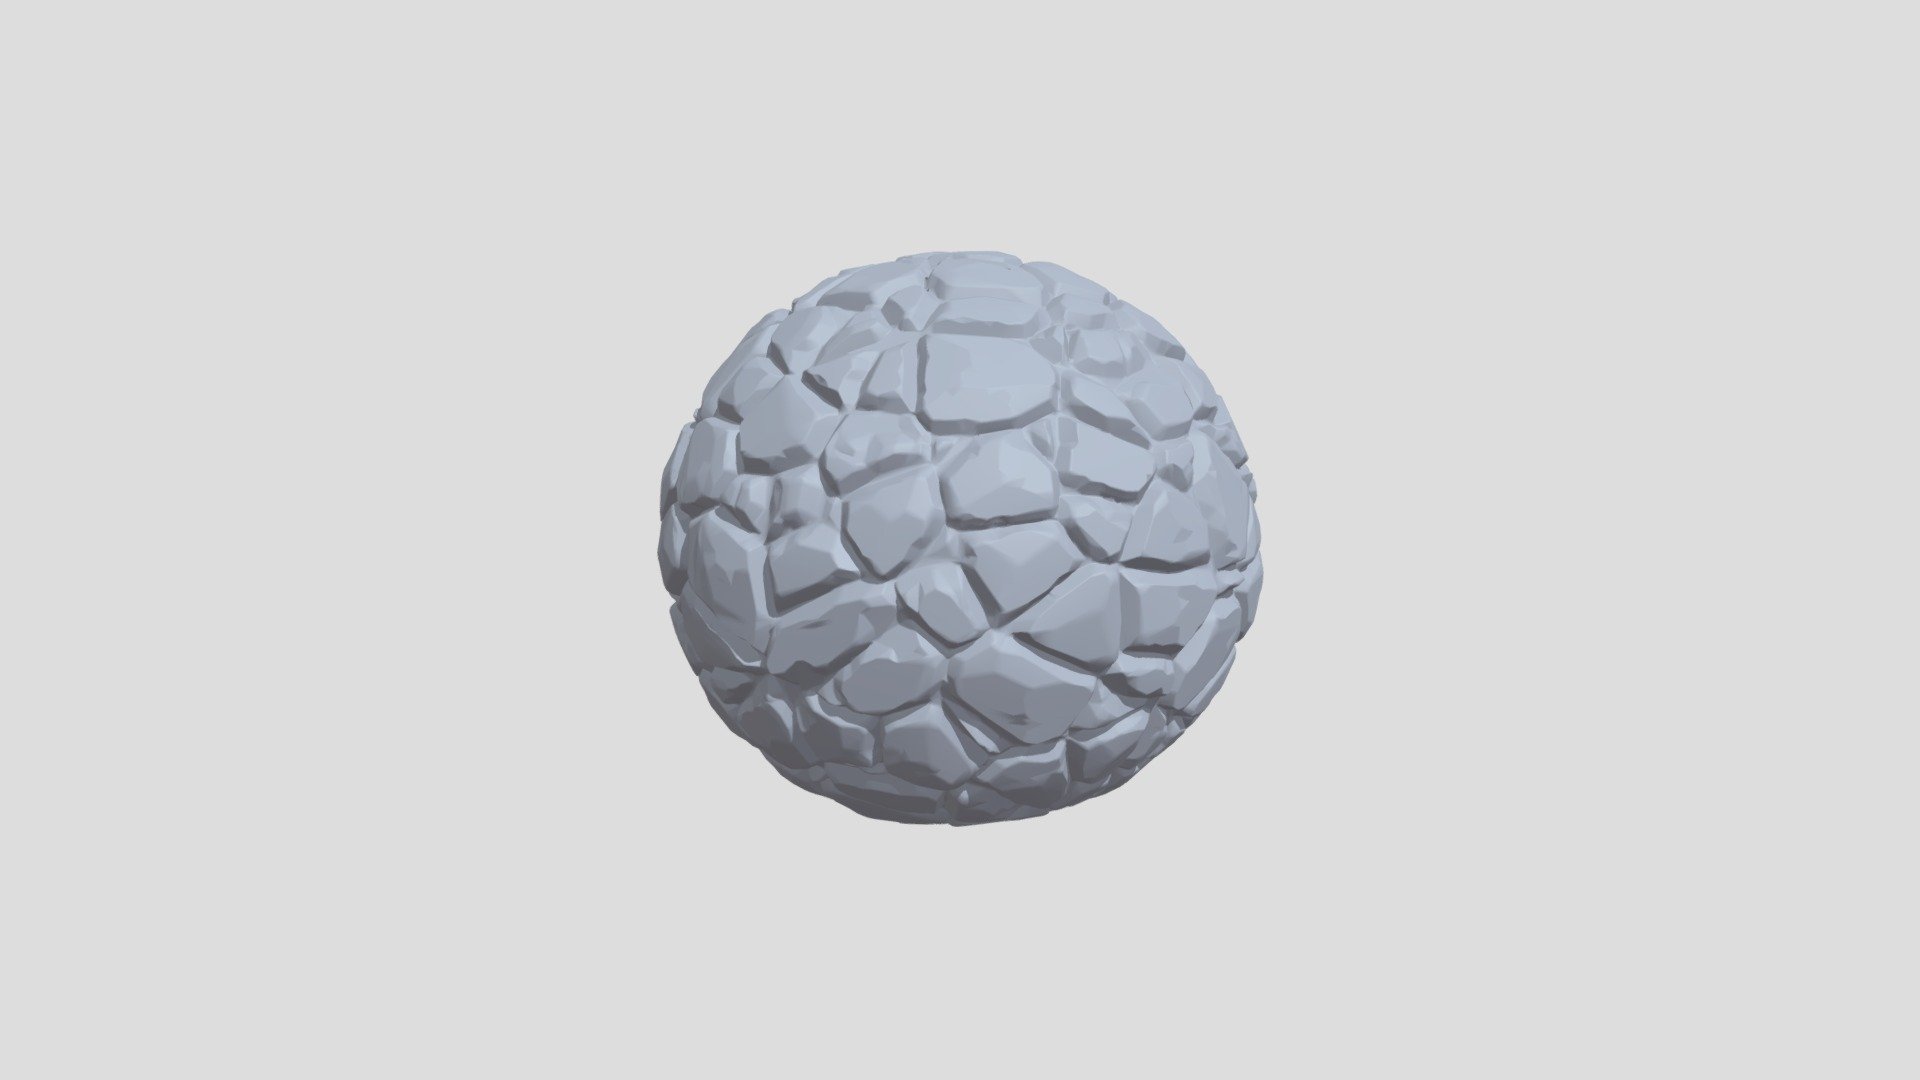 Blender-code-sculpt rock ball that Iuse to make rock wall sculpt - 3DRockWallSculptBall - 3D model by AtteHilander (@atte.hilander) 3d model